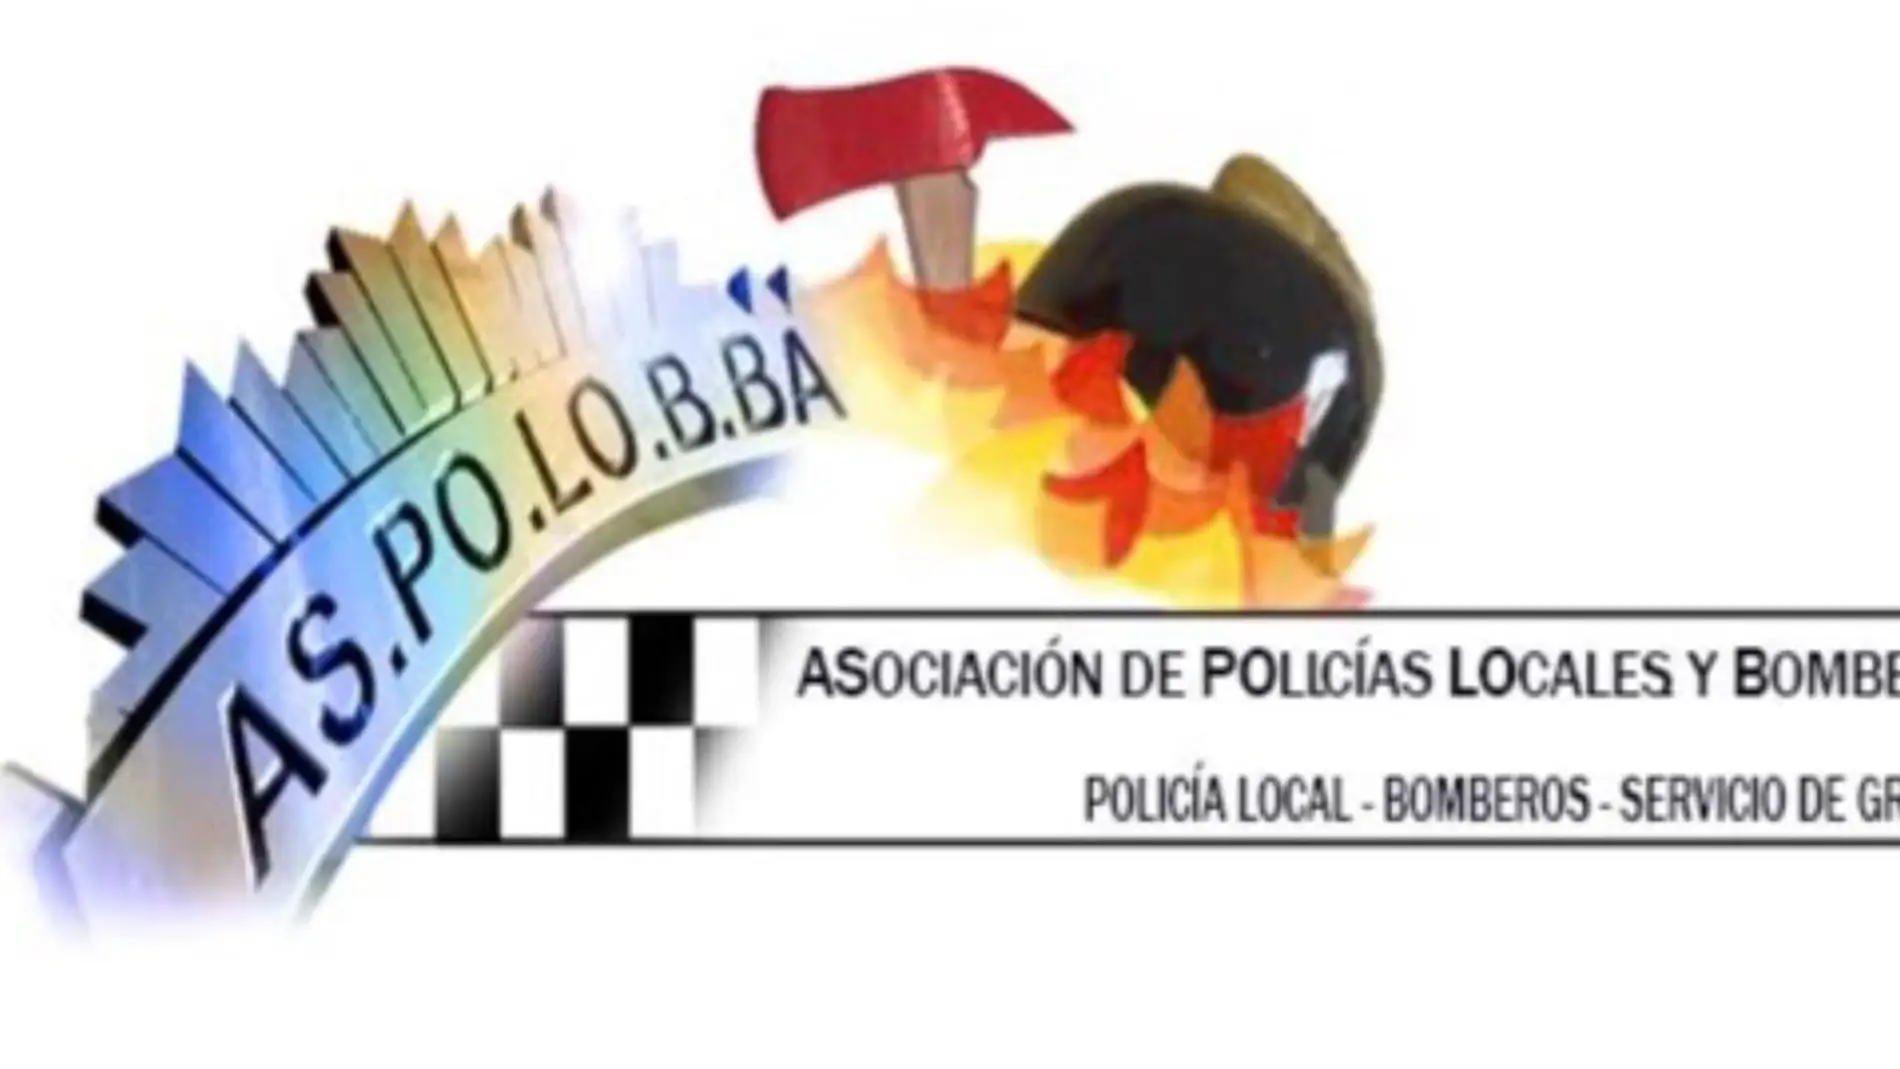 Las mejoras salariales para policías locales y bomberos de Badajoz requerirá más servicios en eventos de la ciudad